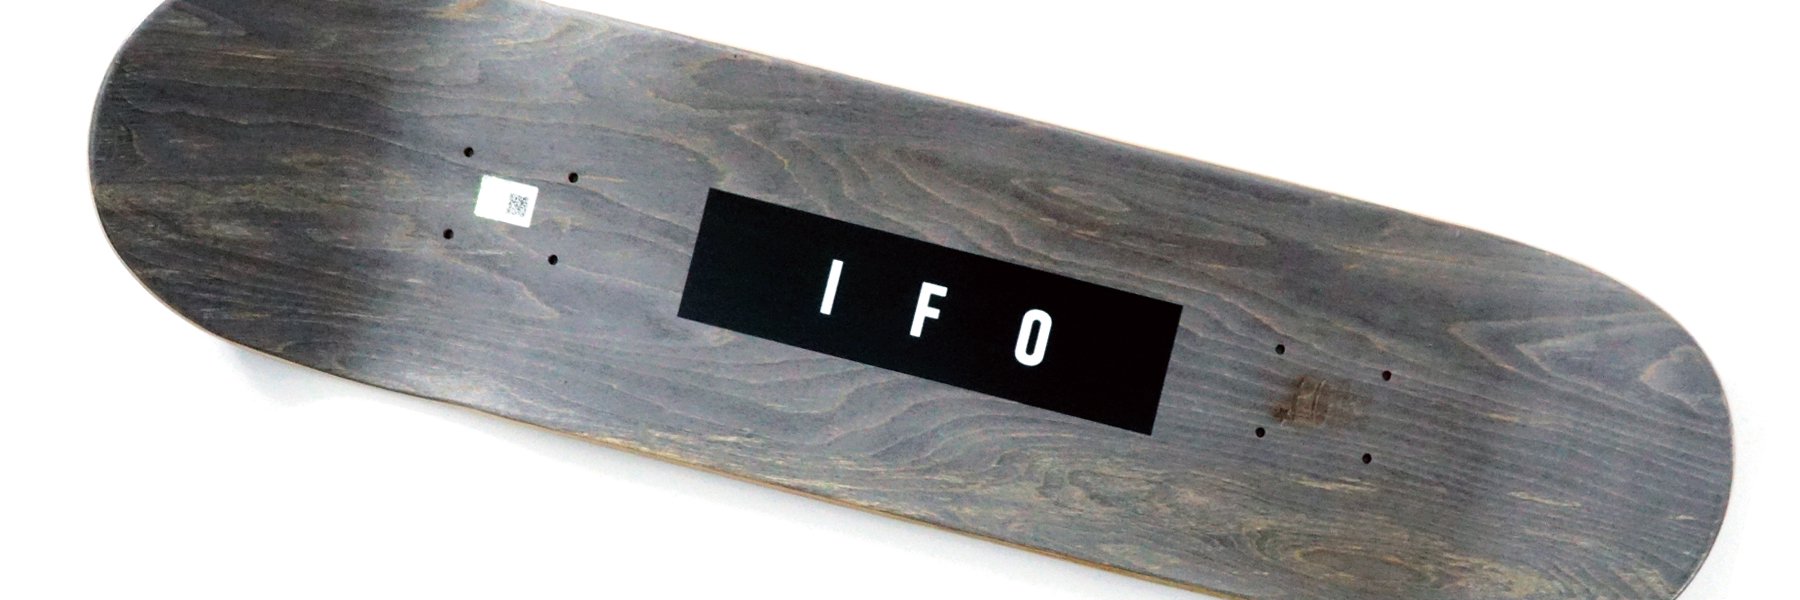 IFOのスケートデッキはこちらから - 【INDECKS】 スケートボード用品を 